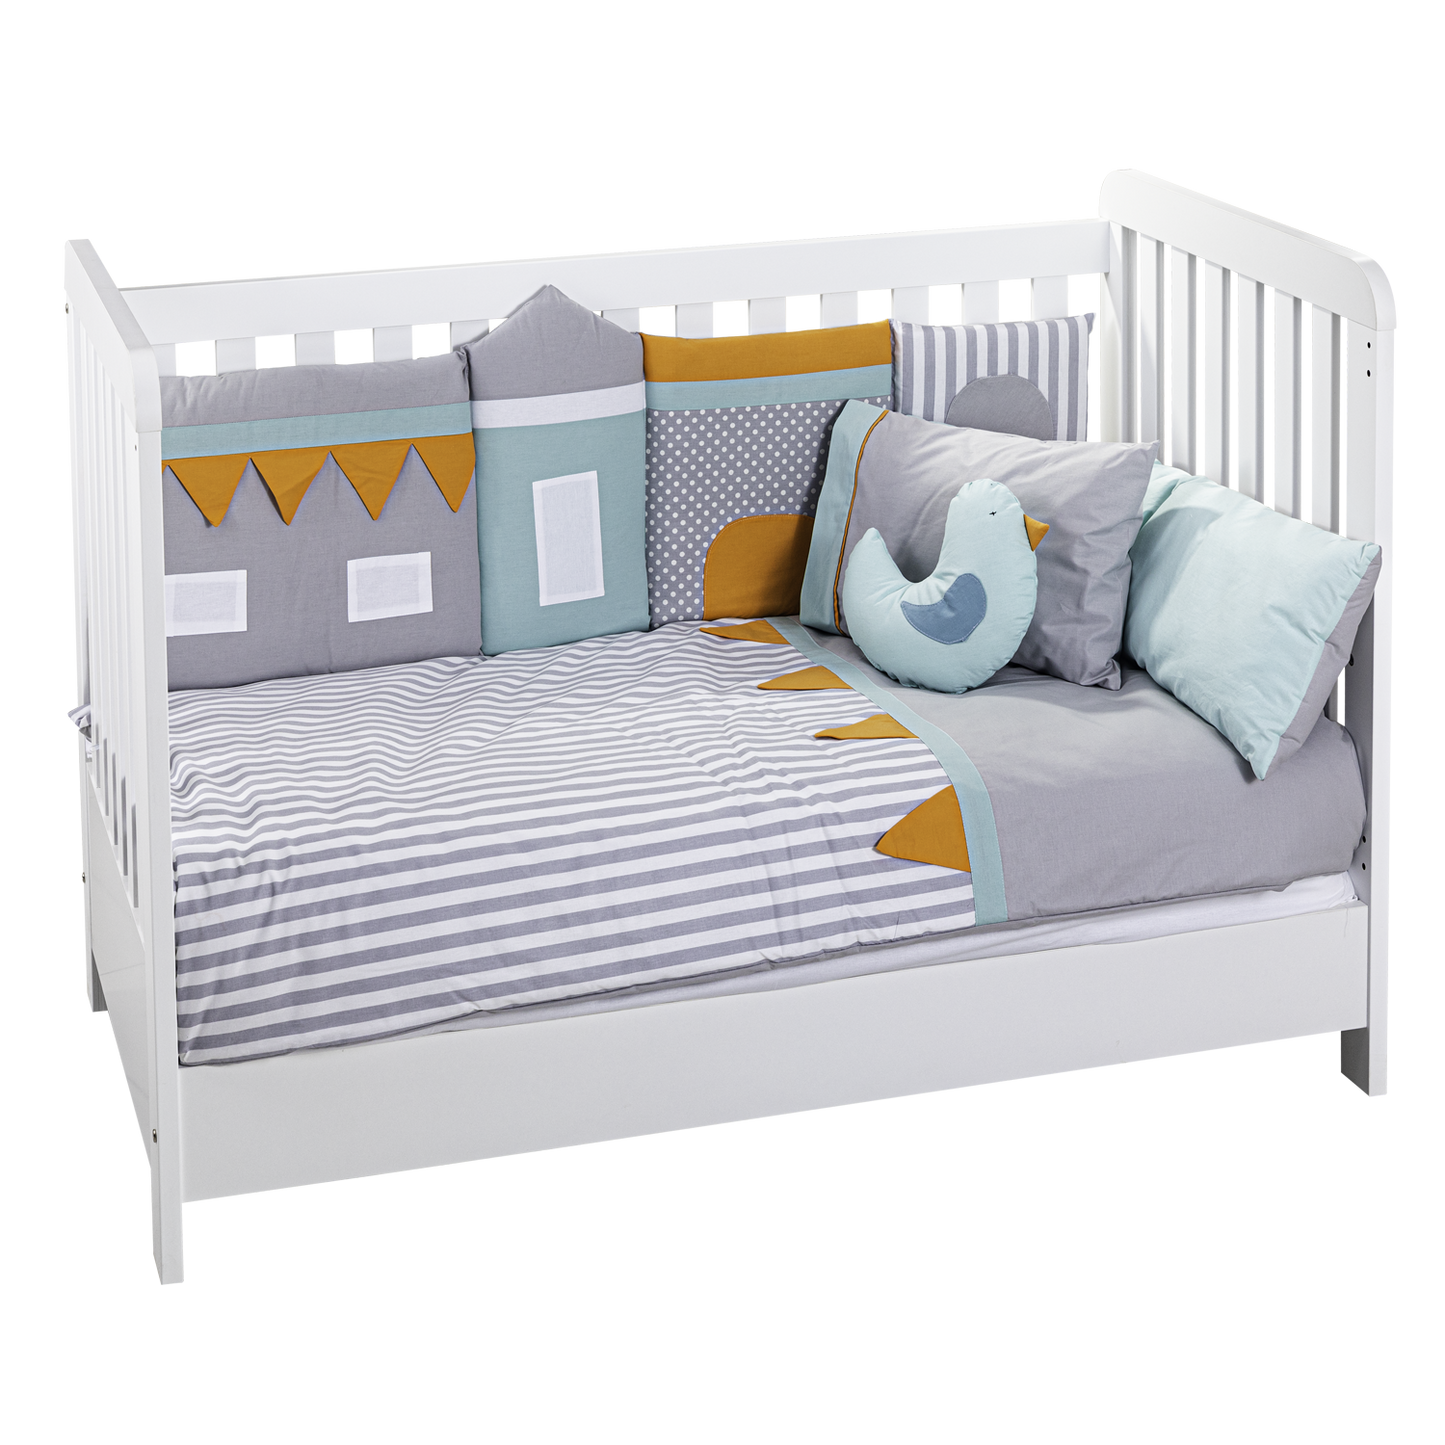 Caploonba - Birdhouse Baby Bedroom